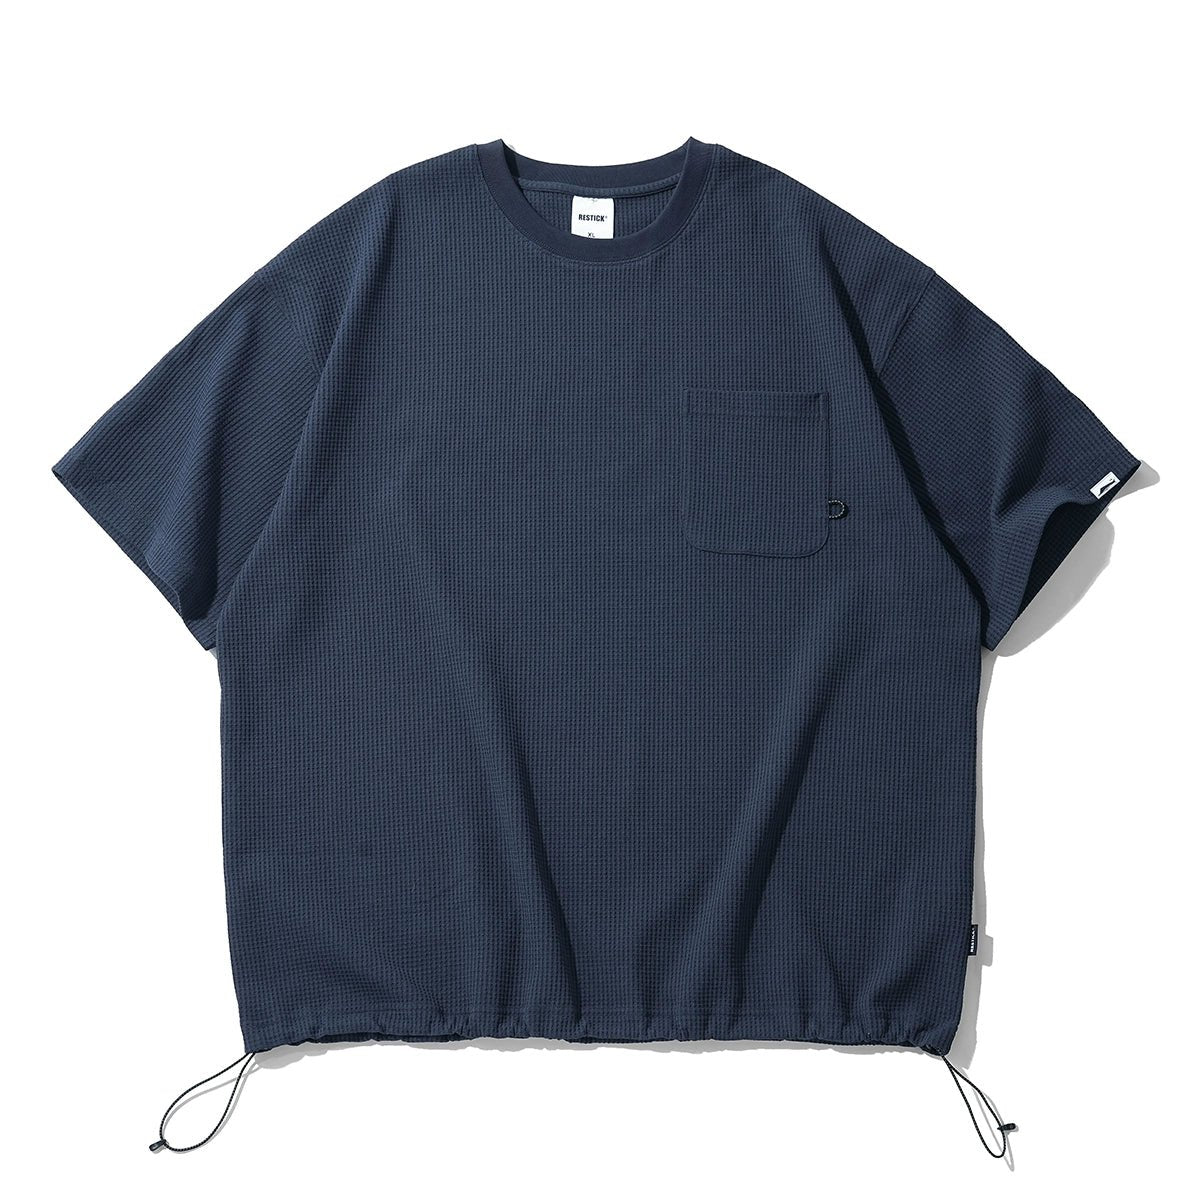 【X-STRETCHエクスポート生地】ワッフル5クォーター半袖Tシャツ R05012